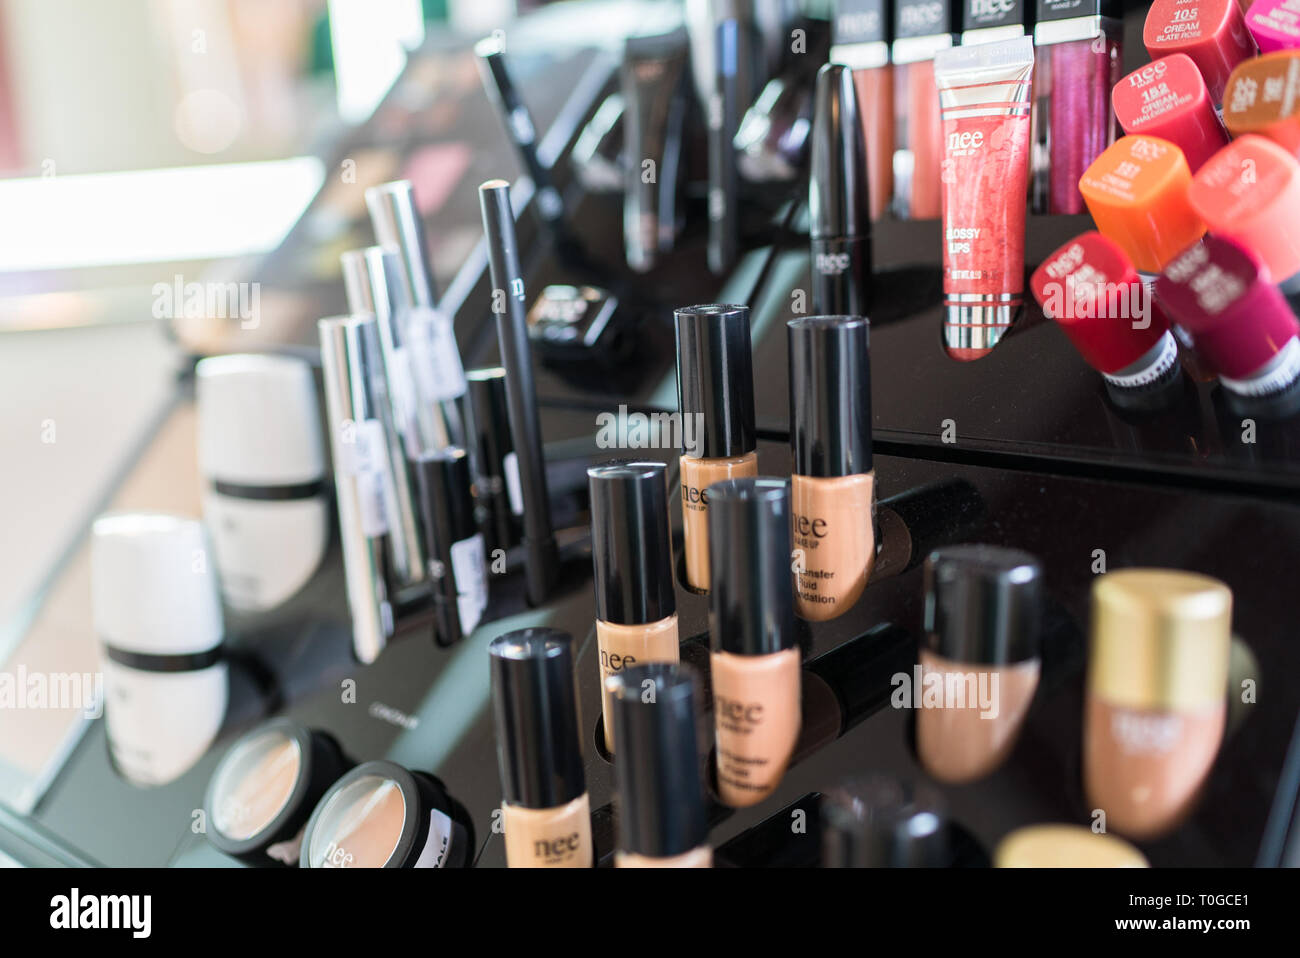 Verona, Italien - 4 April 2016: Kosmetik angezeigt, die auf den Regalen eines modernen Beauty Salon. Stockfoto